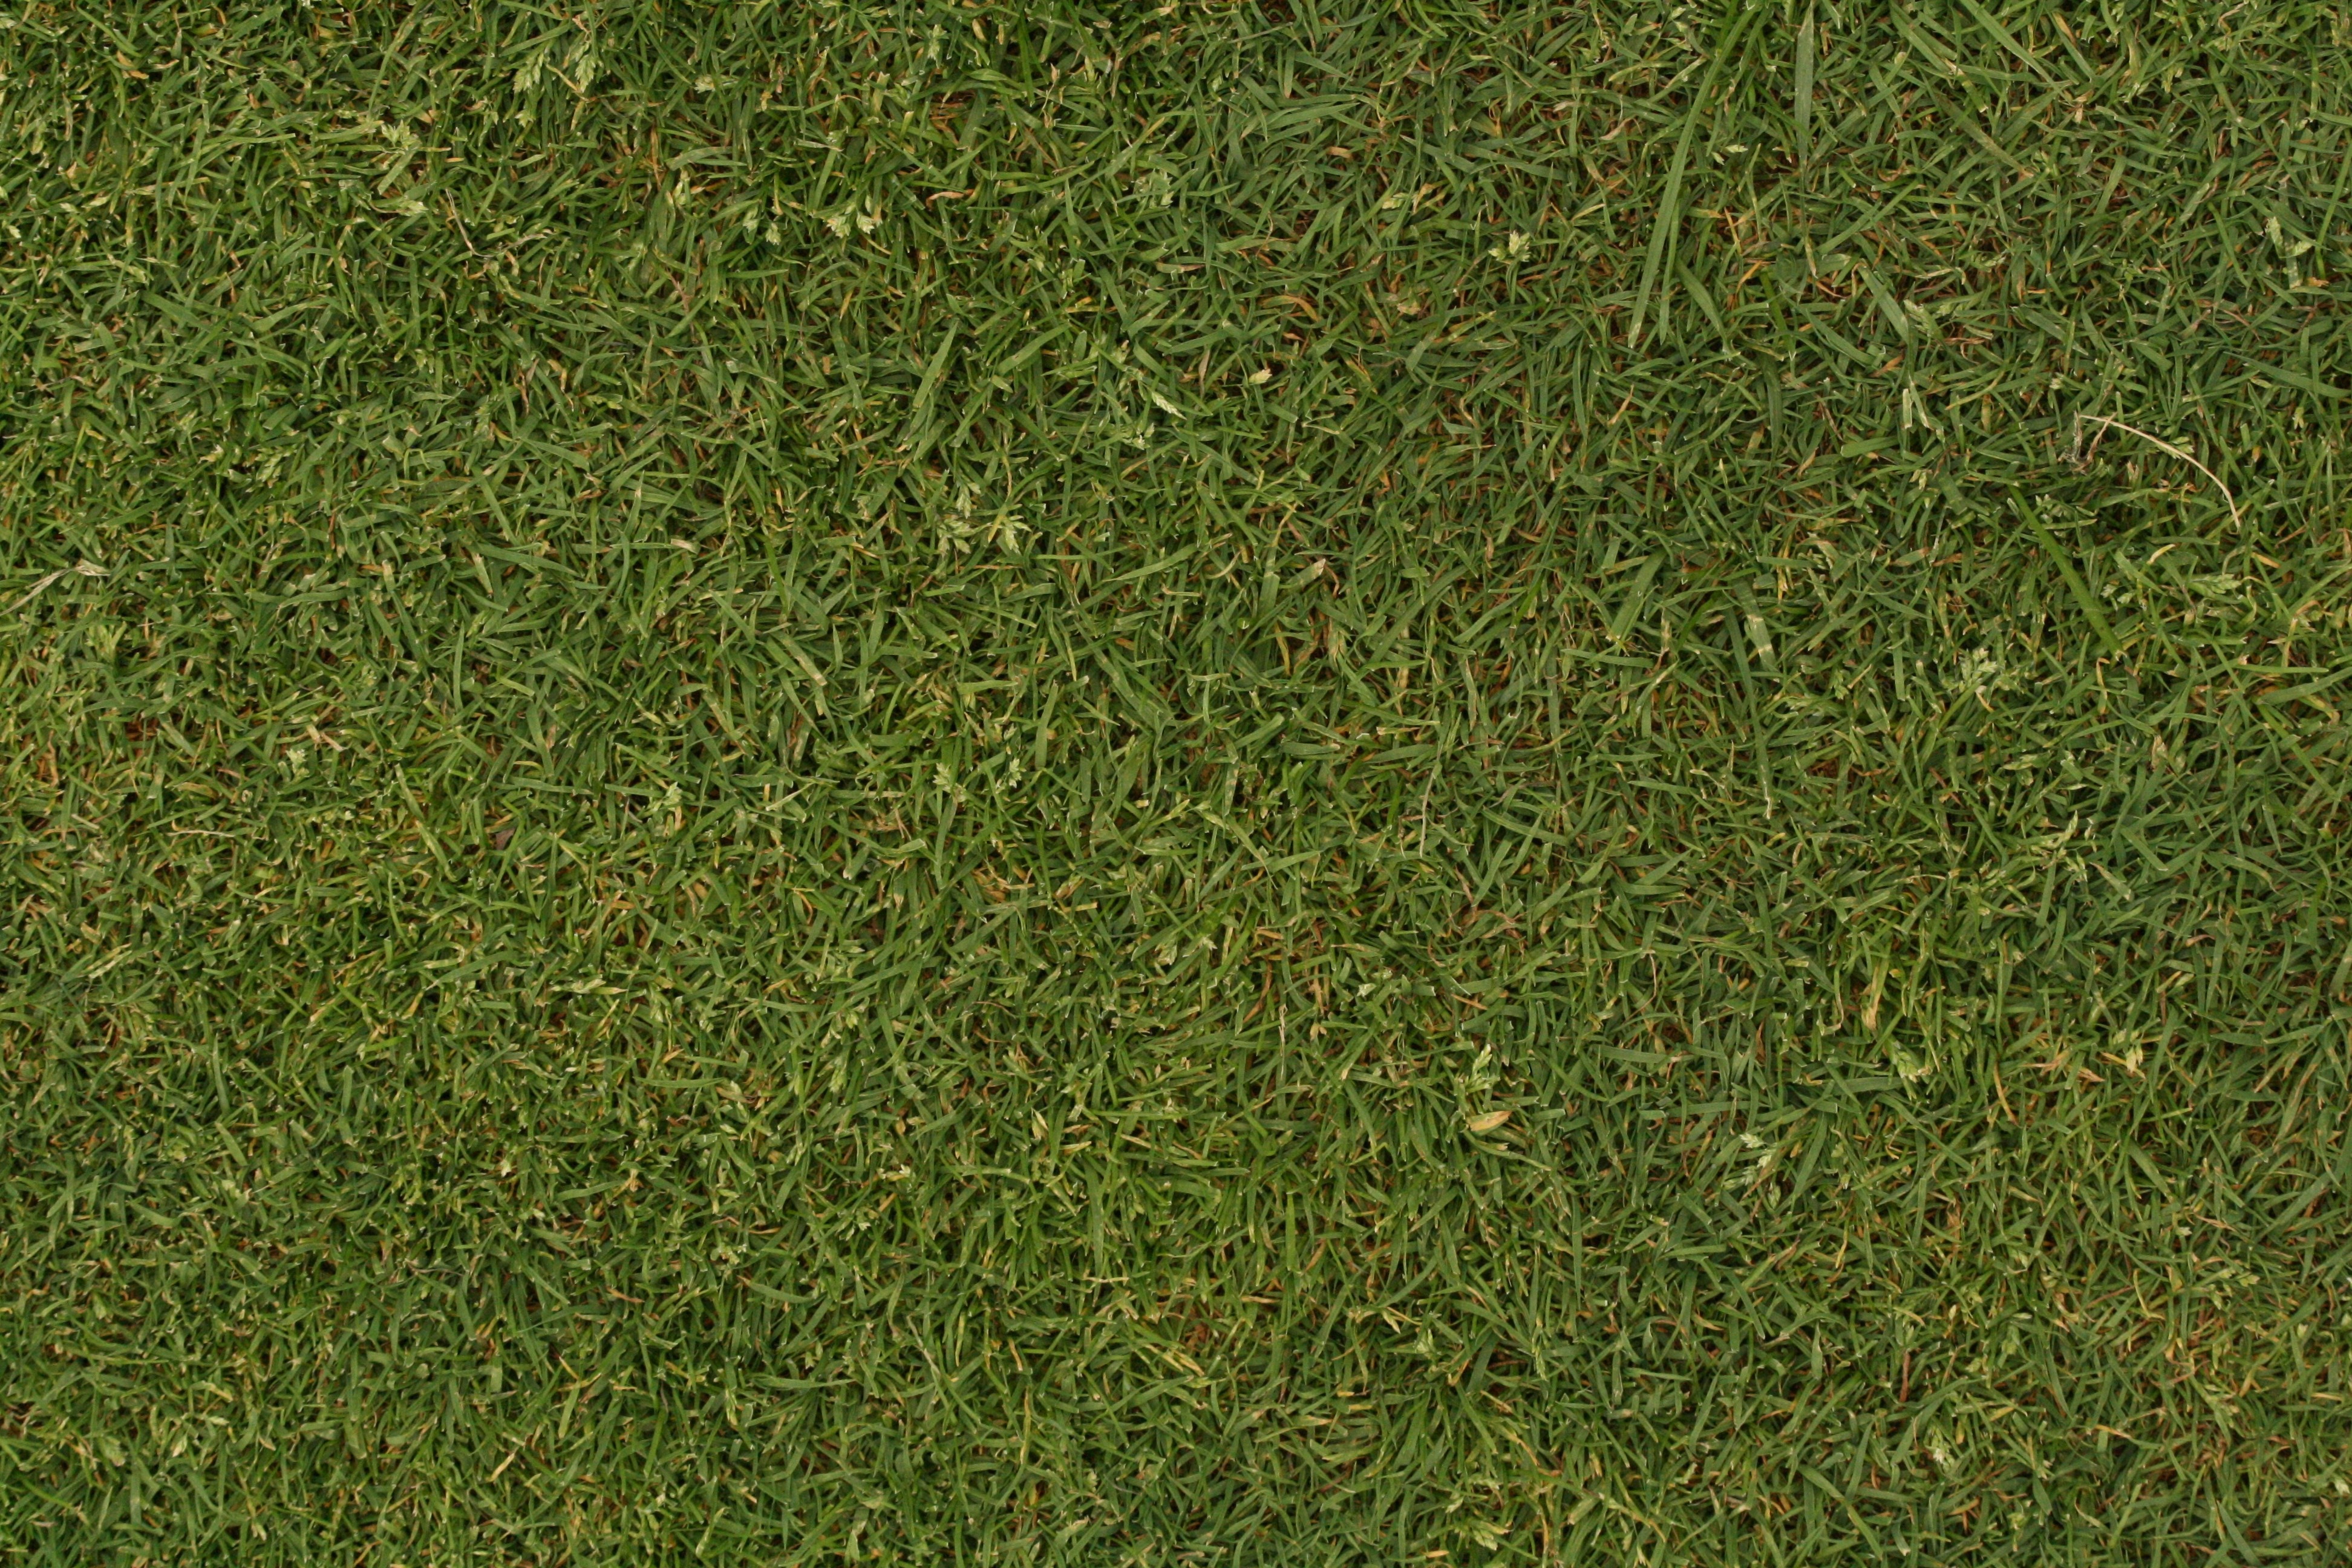 35 Seamless & HD Grass Textures for Designers | 360wango